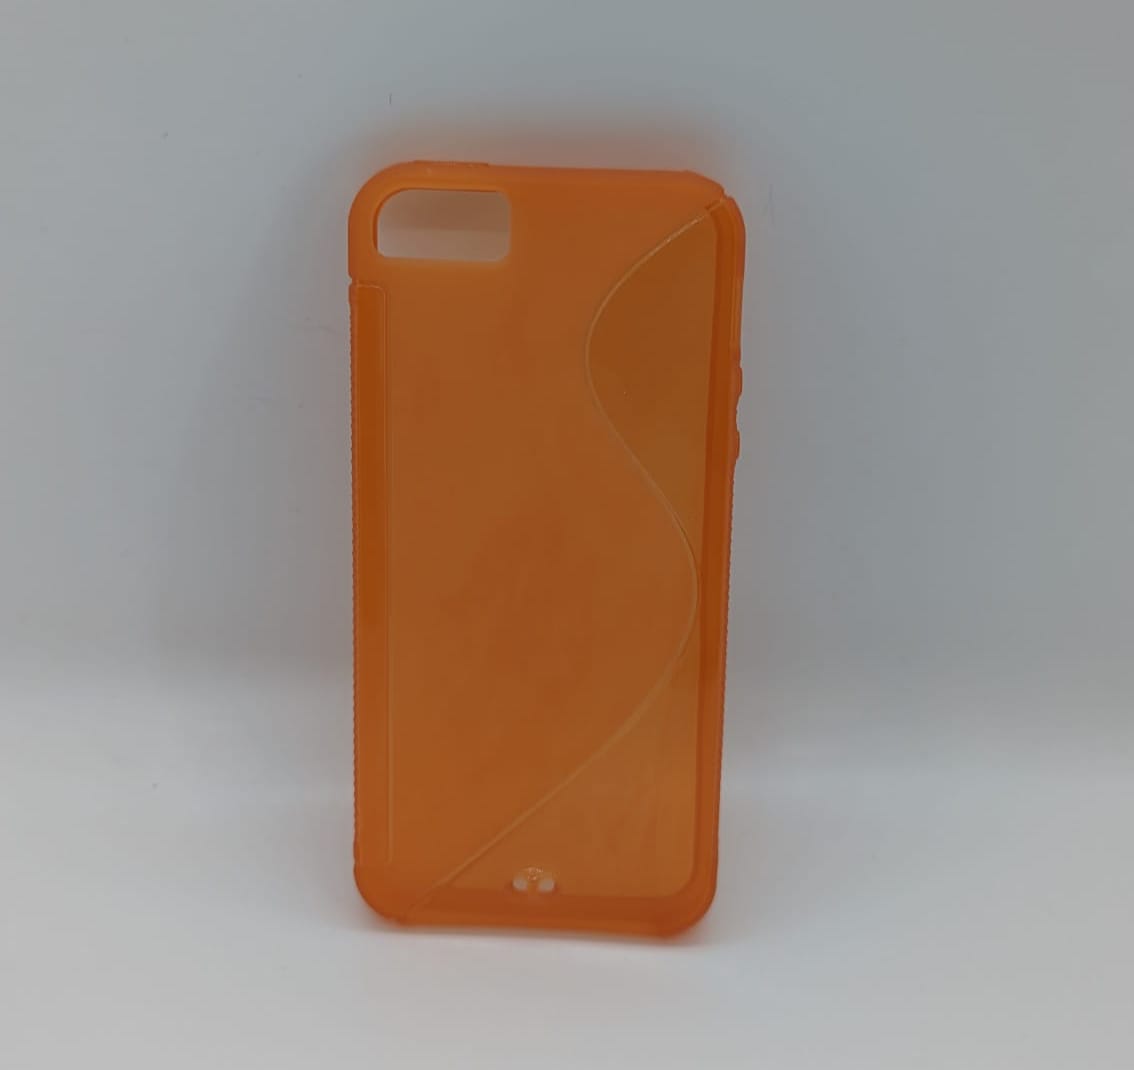 Iphone 5,5s, Se 2016 Orange Case